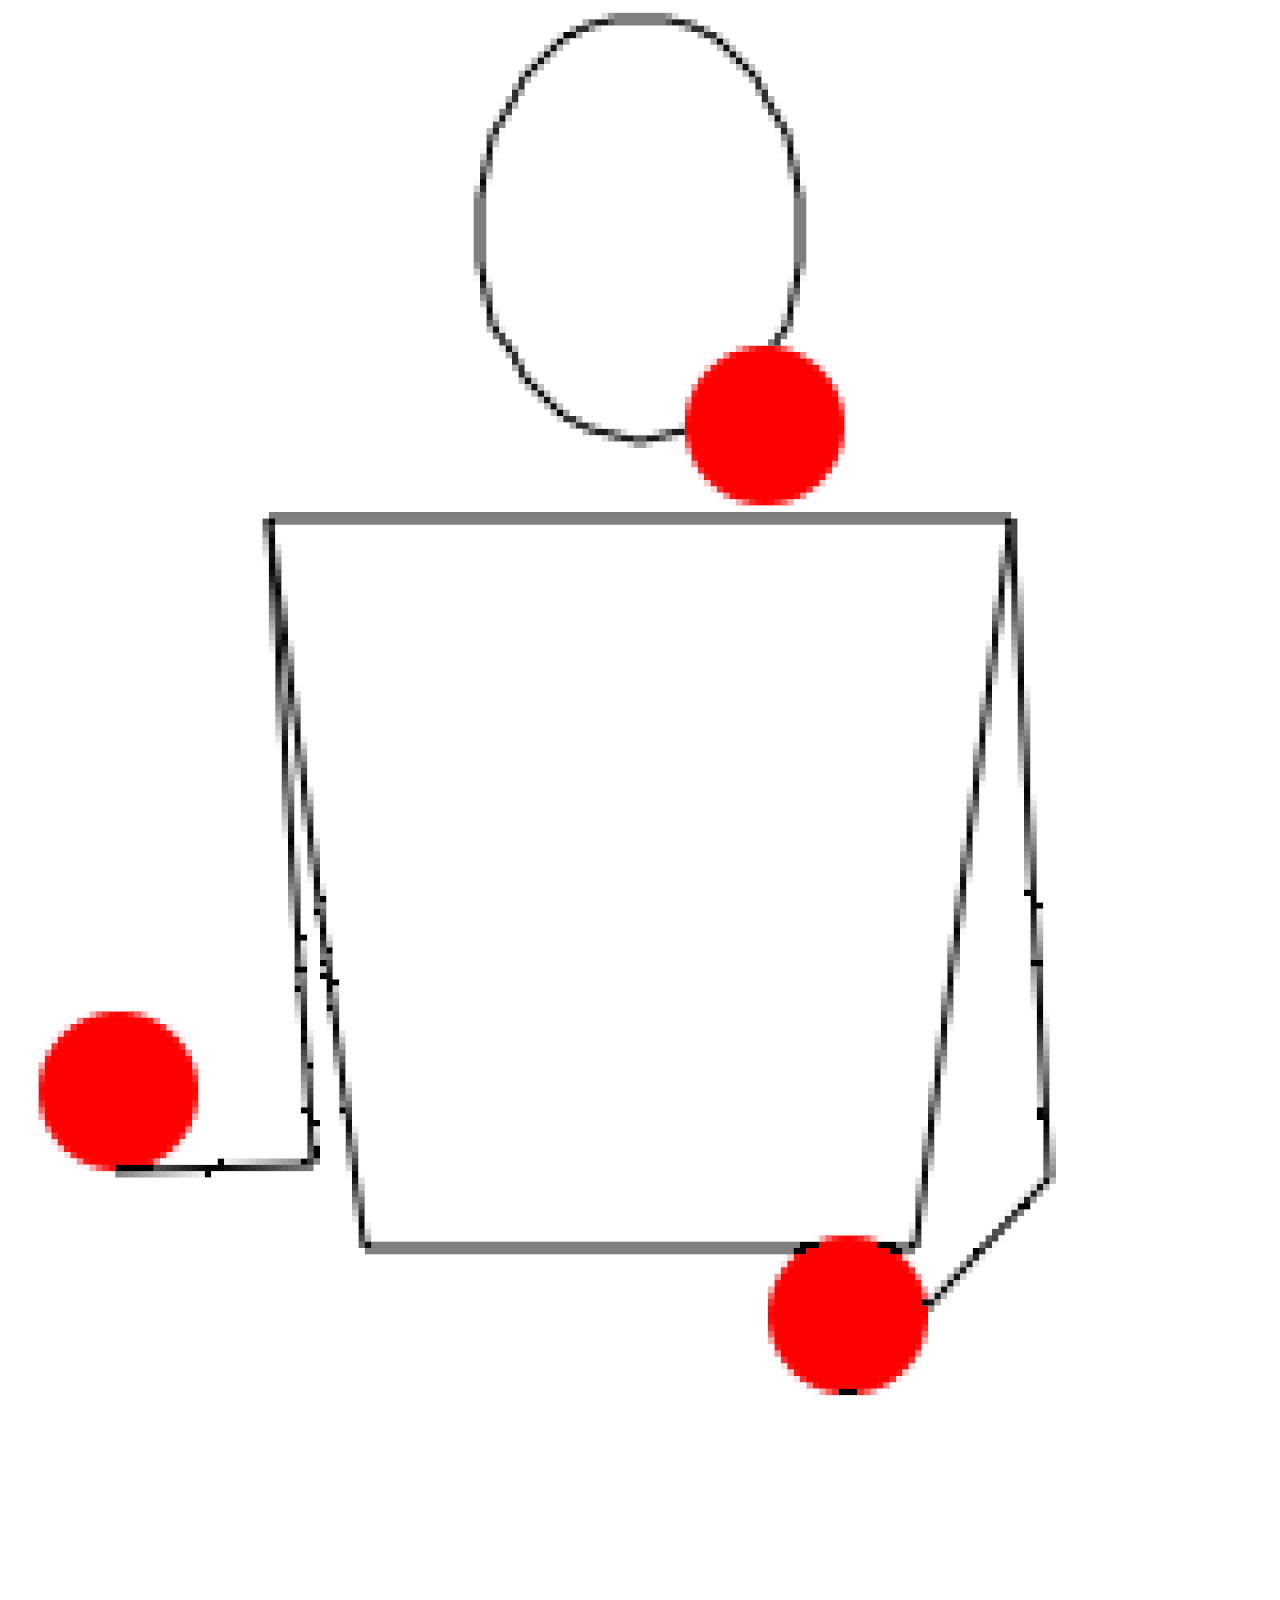 Жонглирование шарами. Техника жонглирования 2 мячами. Схема жонглирования 3. Жонглирование 3 мячами Каскад. Как научиться жонглировать тремя мячами.